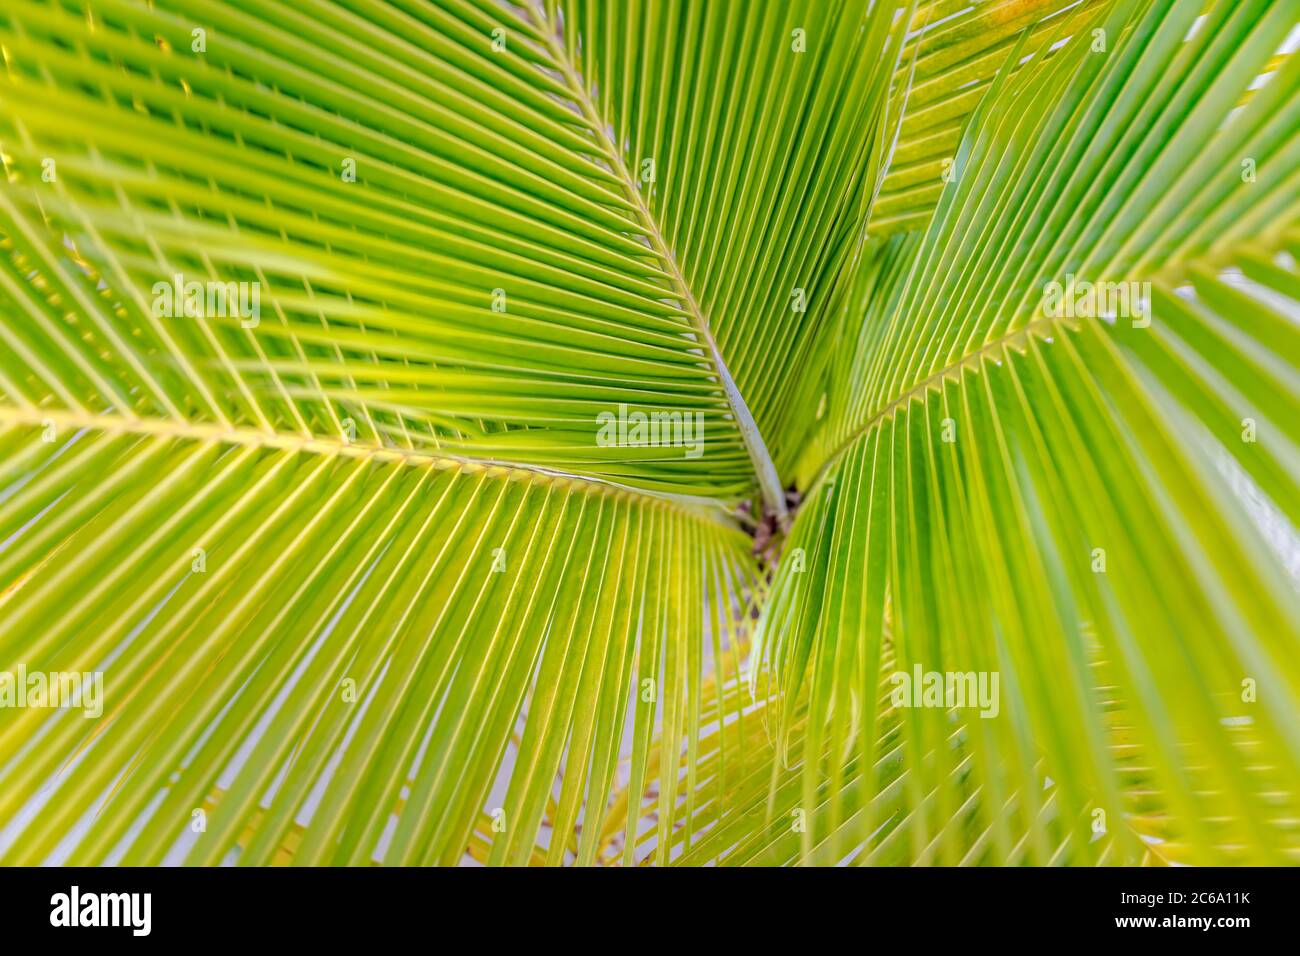 Exotische grüne Palmwedel, üppige Wand aus tropischen Blättern, Formen und Texturen. Sonnige frische grüne Palmblätter Stockfoto